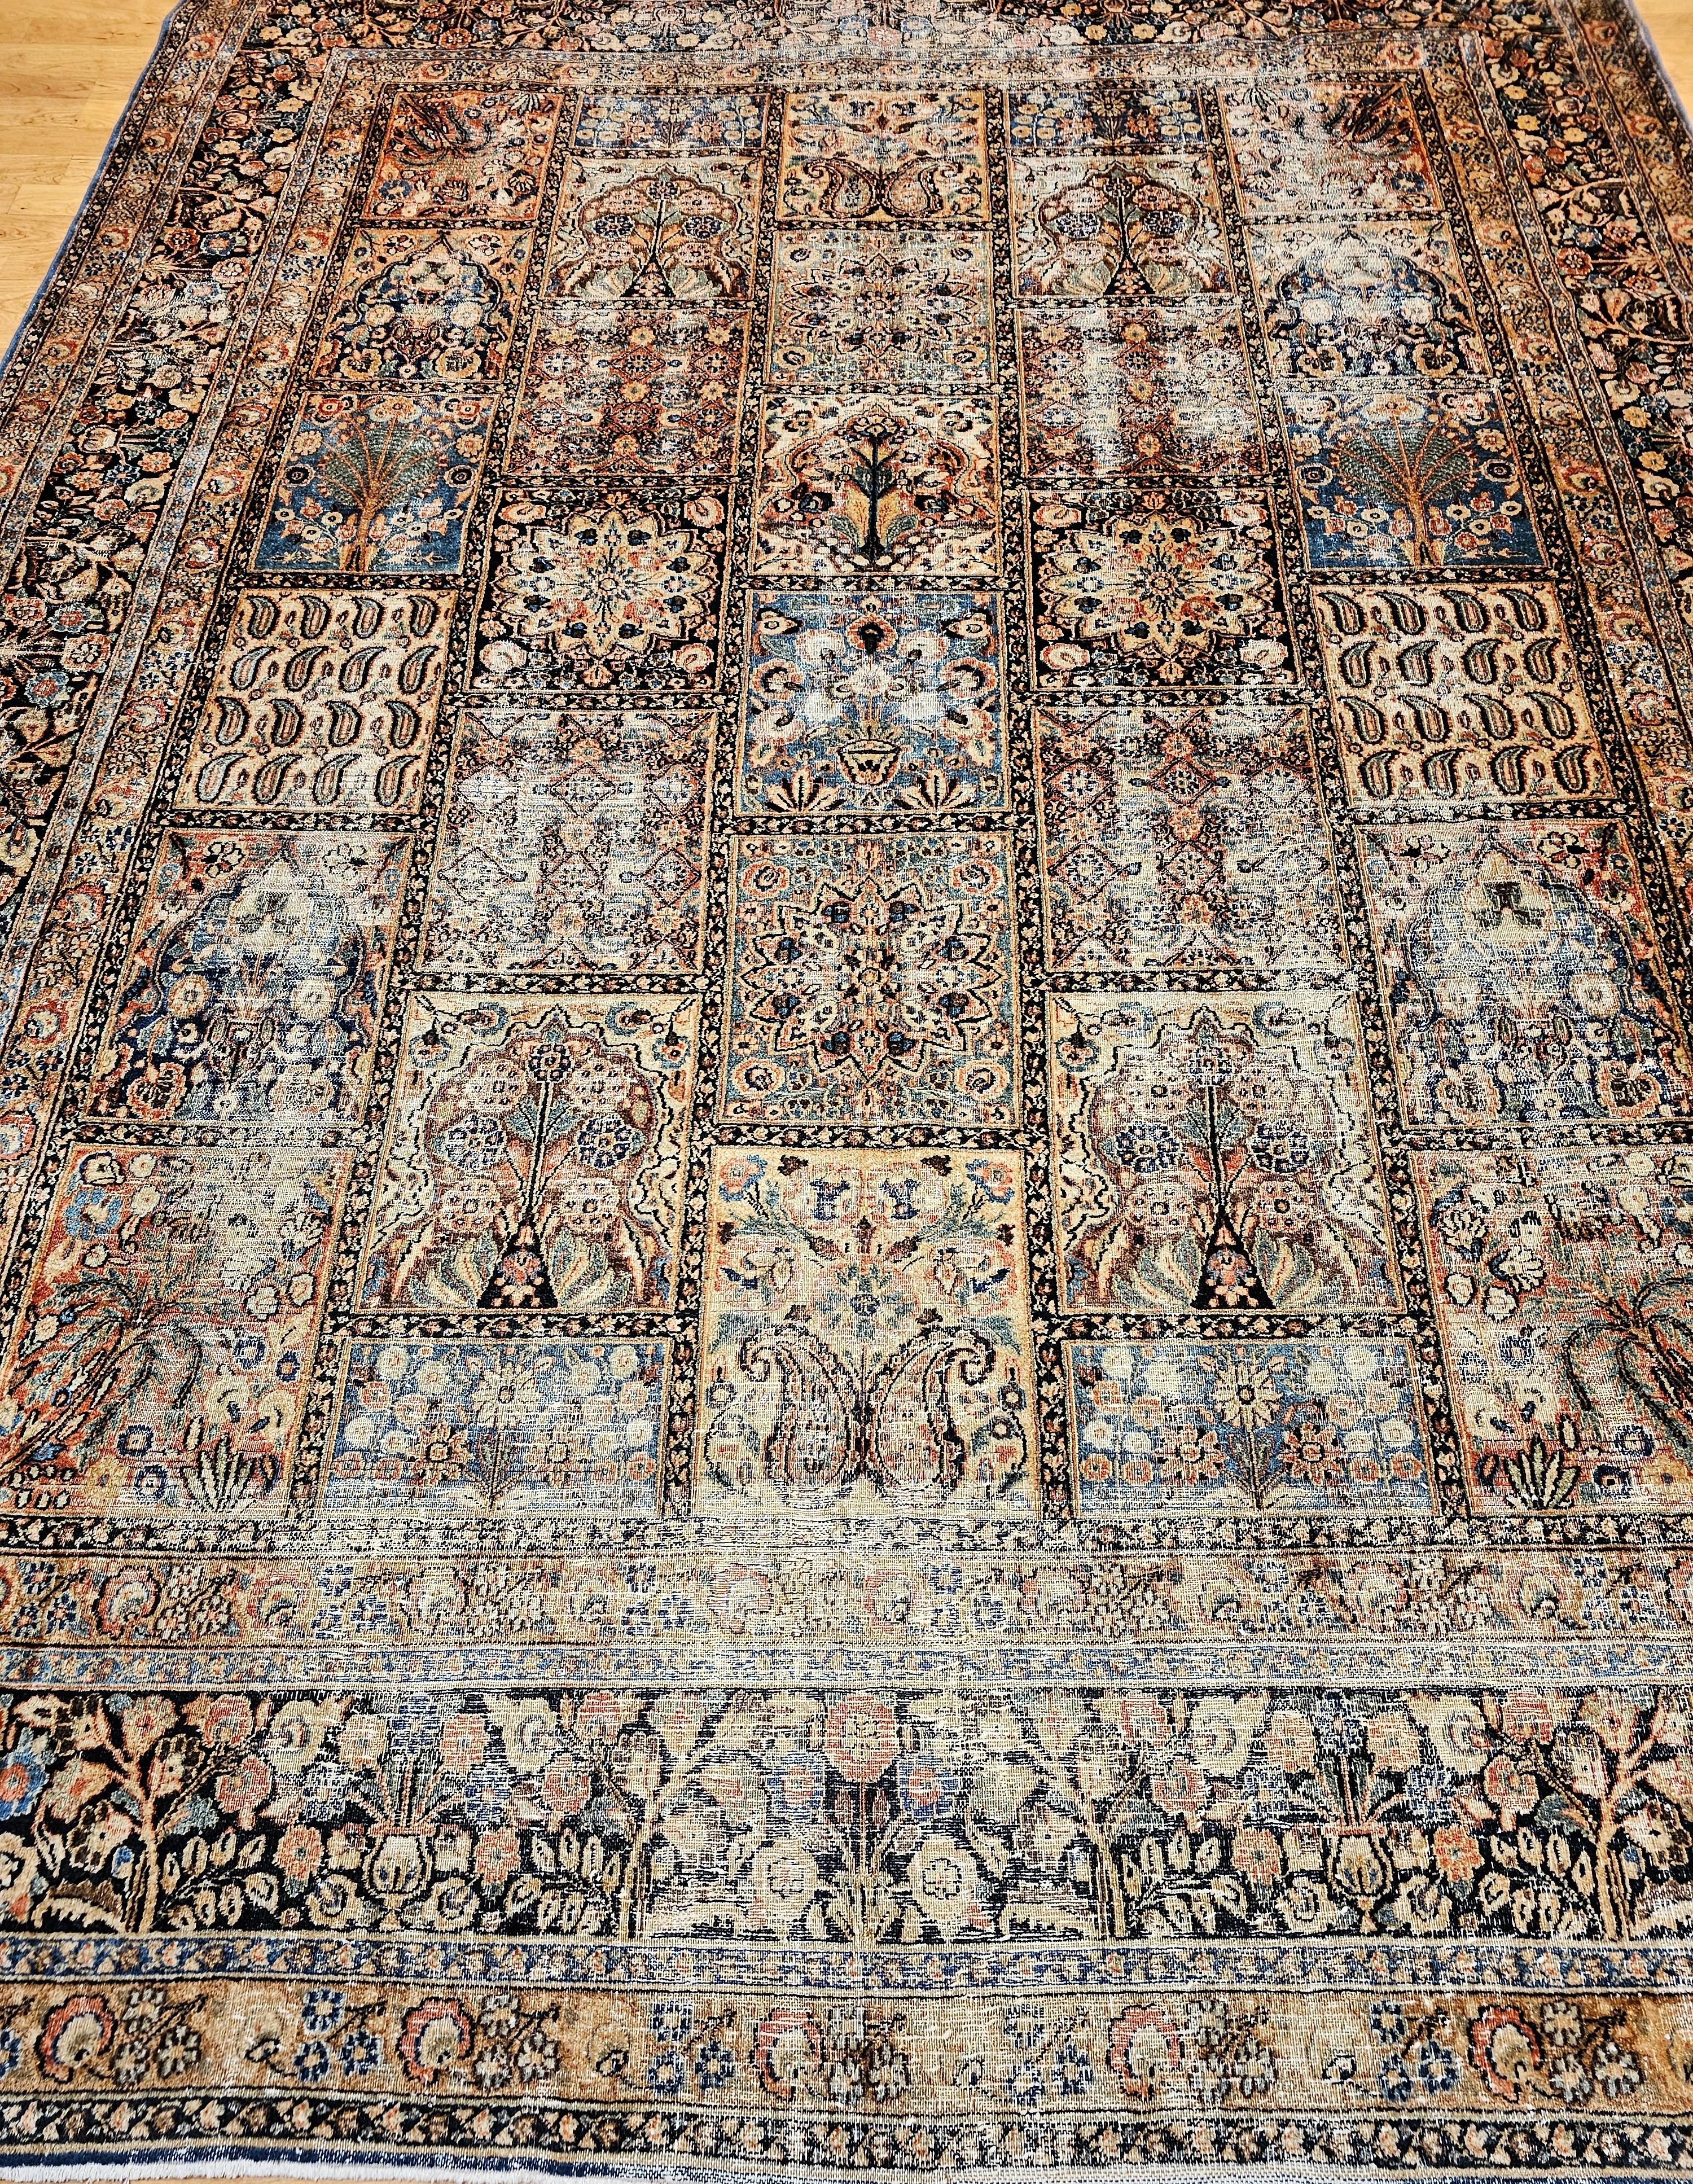  Magnifique tapis persan Khorassan de la fin du 19e siècle/début du 20e siècle. Il est composé d'un panneau de couleur verte, bleu royal, bordeaux, ivoire, marron et camel.  Le motif unique des panneaux décalés ajoute au charme de ce magnifique